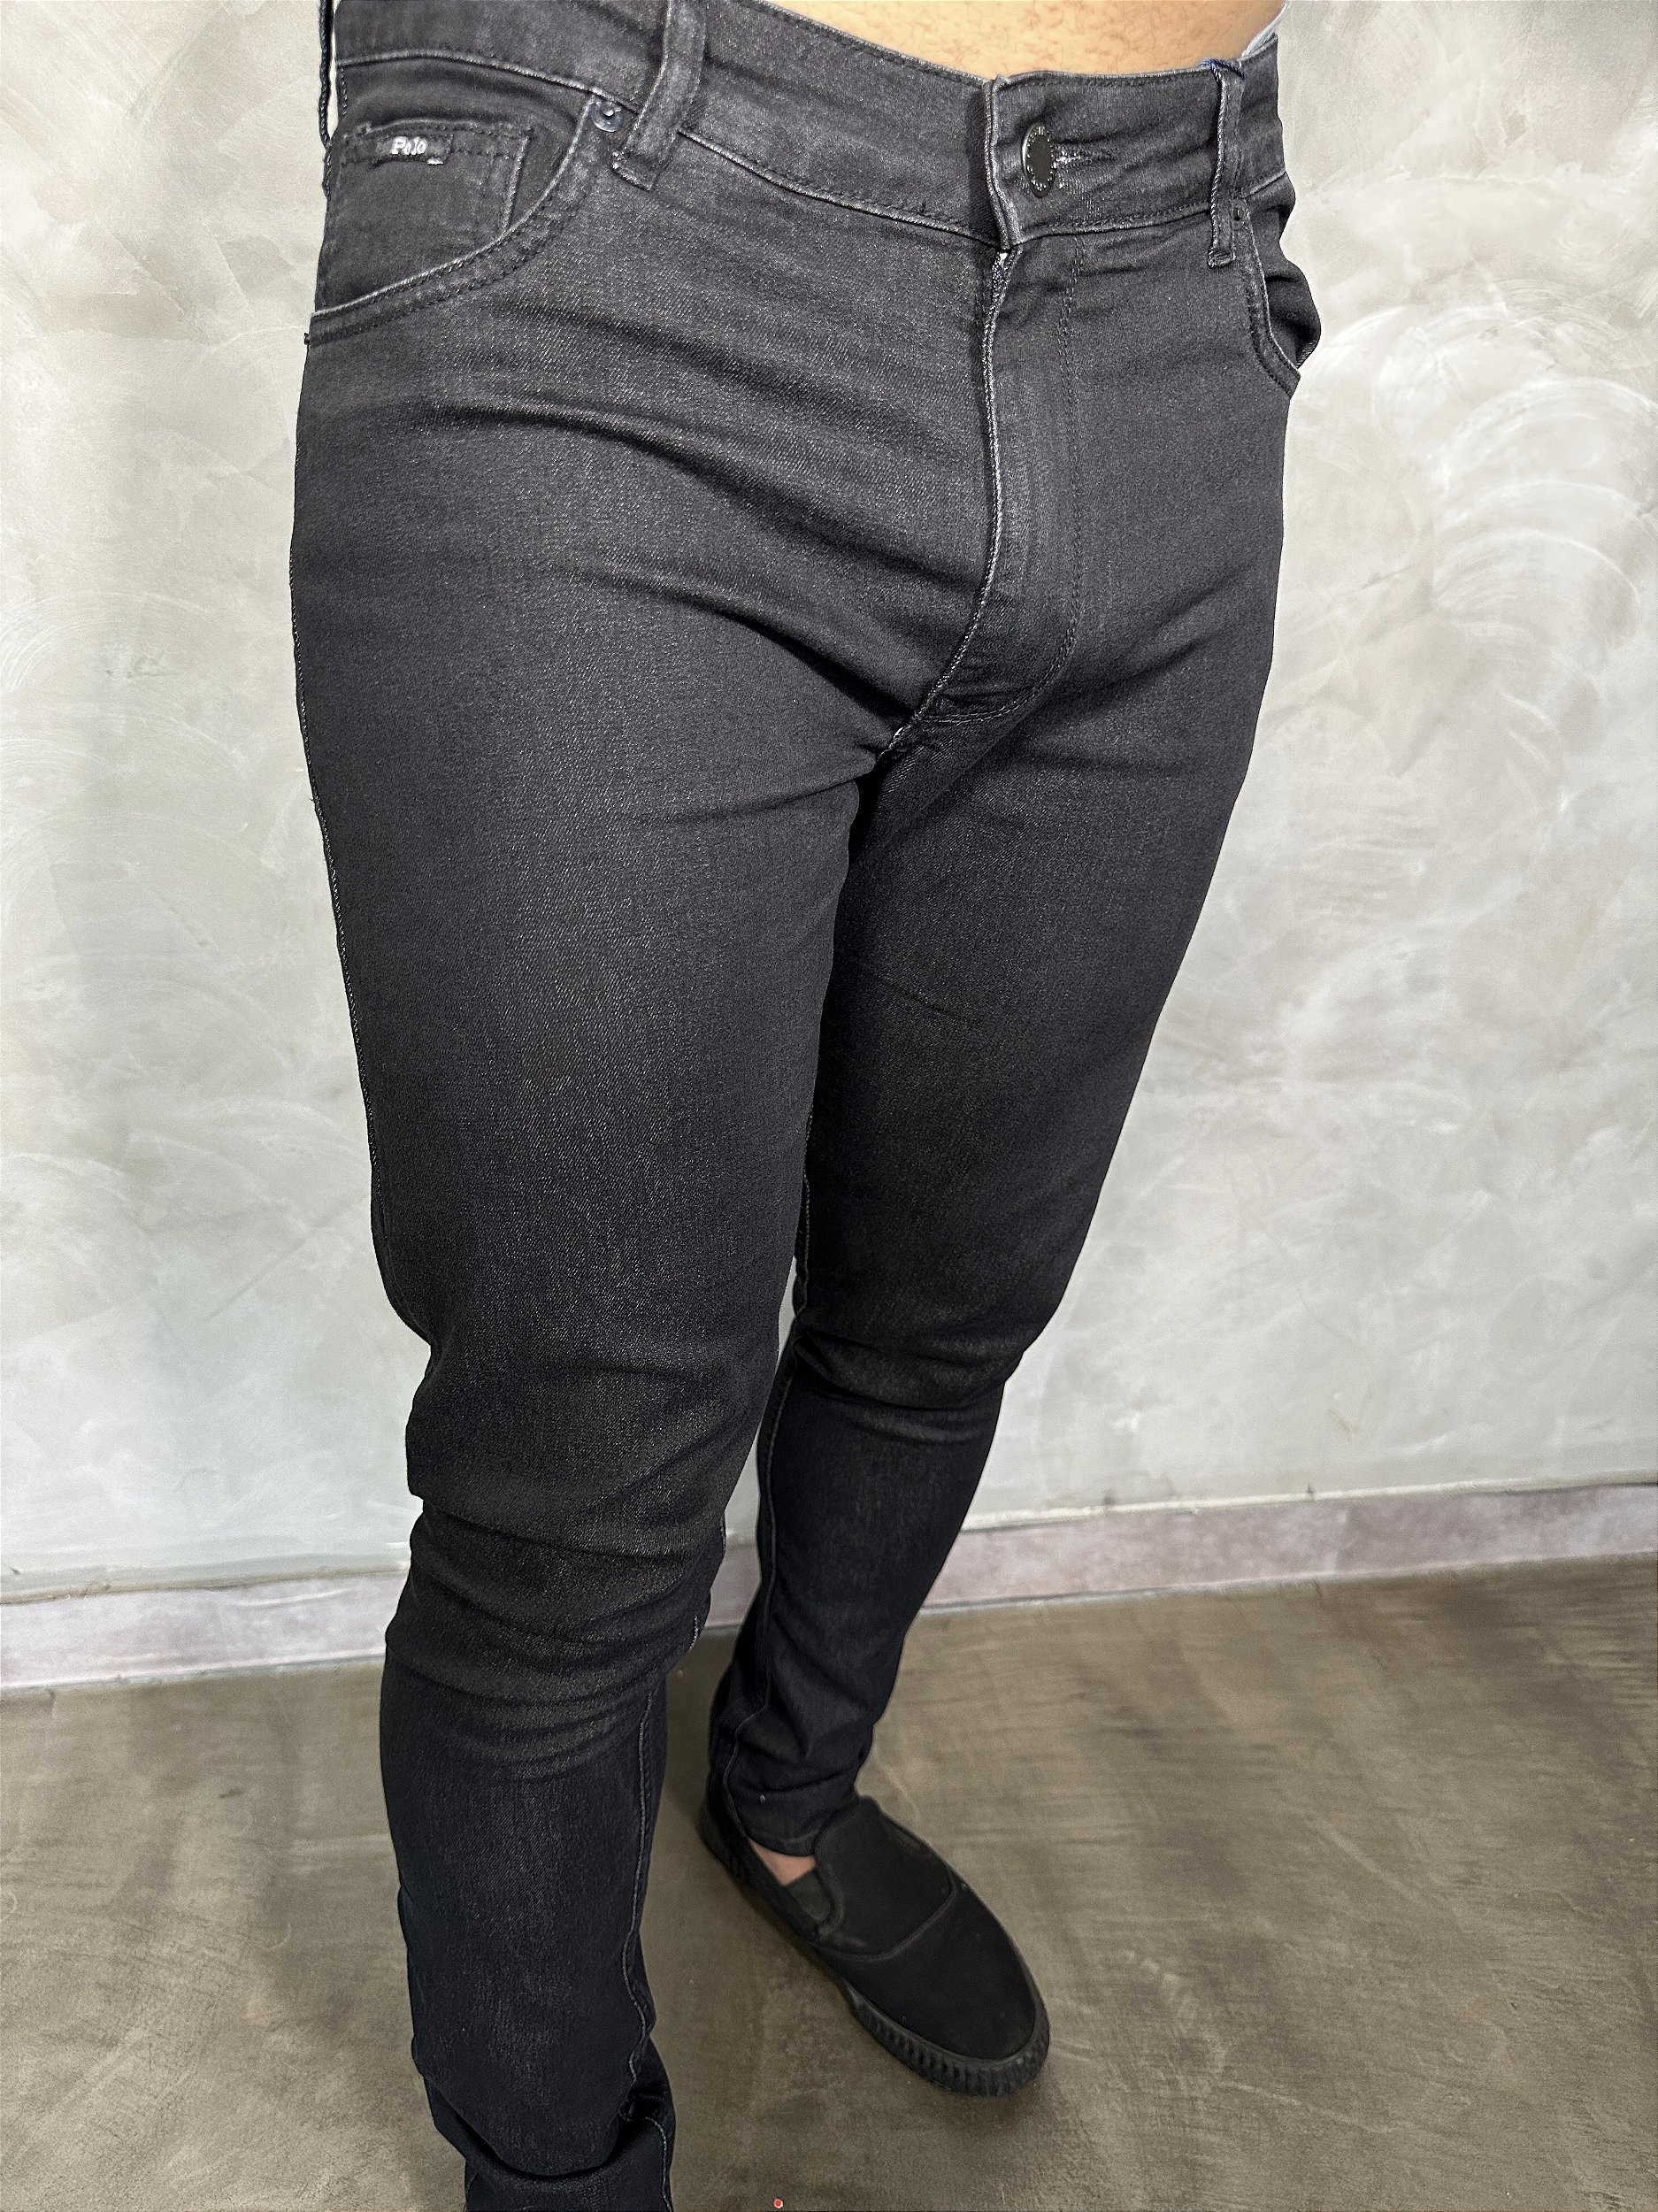 Calça Jeans Polo Ralph Lauren - Jeans Escuro - Nobre Outlet | Moda Masculina